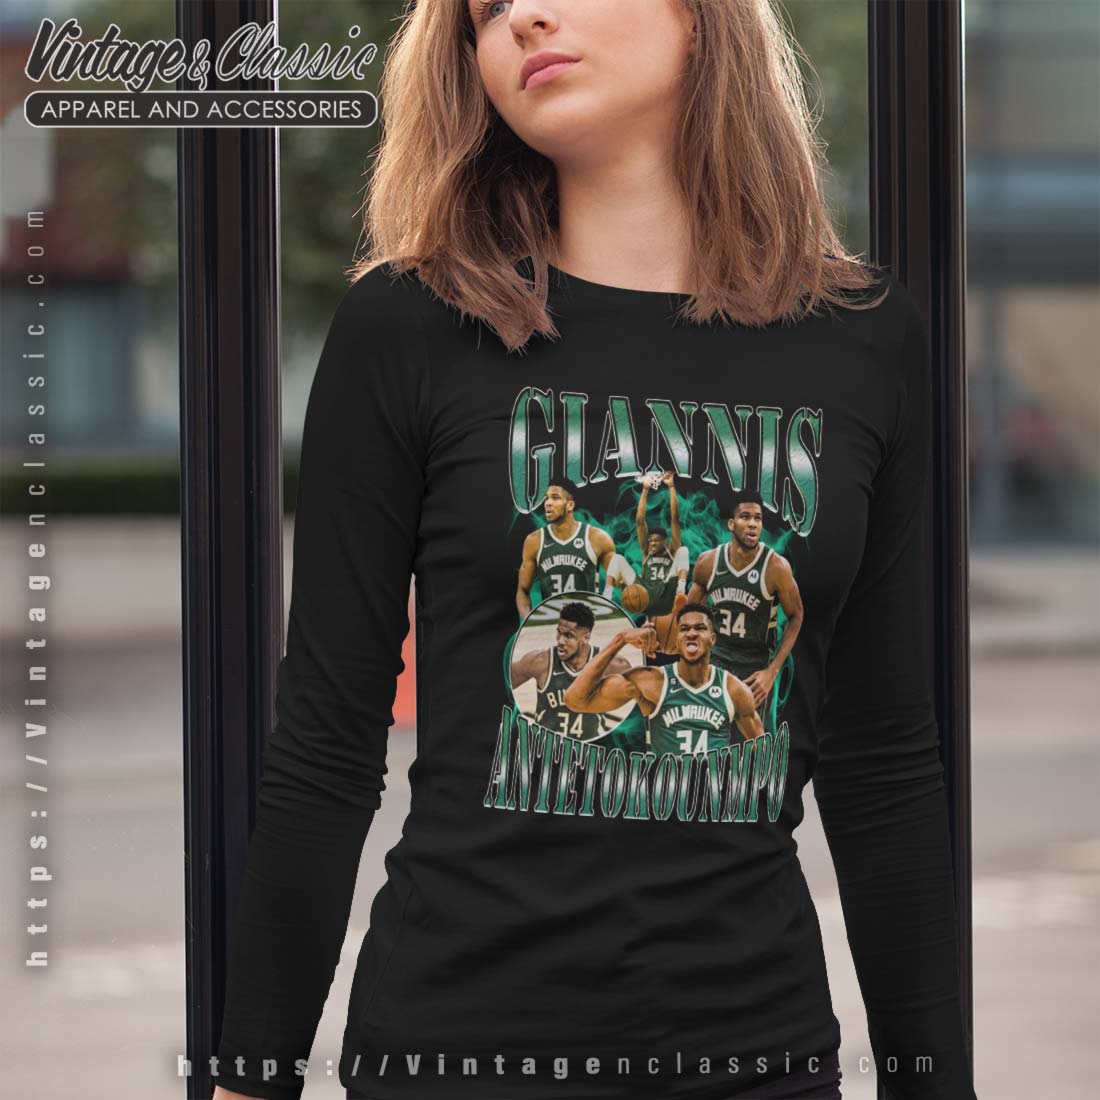 Milwaukee Bucks Giannis Antetokounmpo Basketball Men/Women Cotton T-Shirt